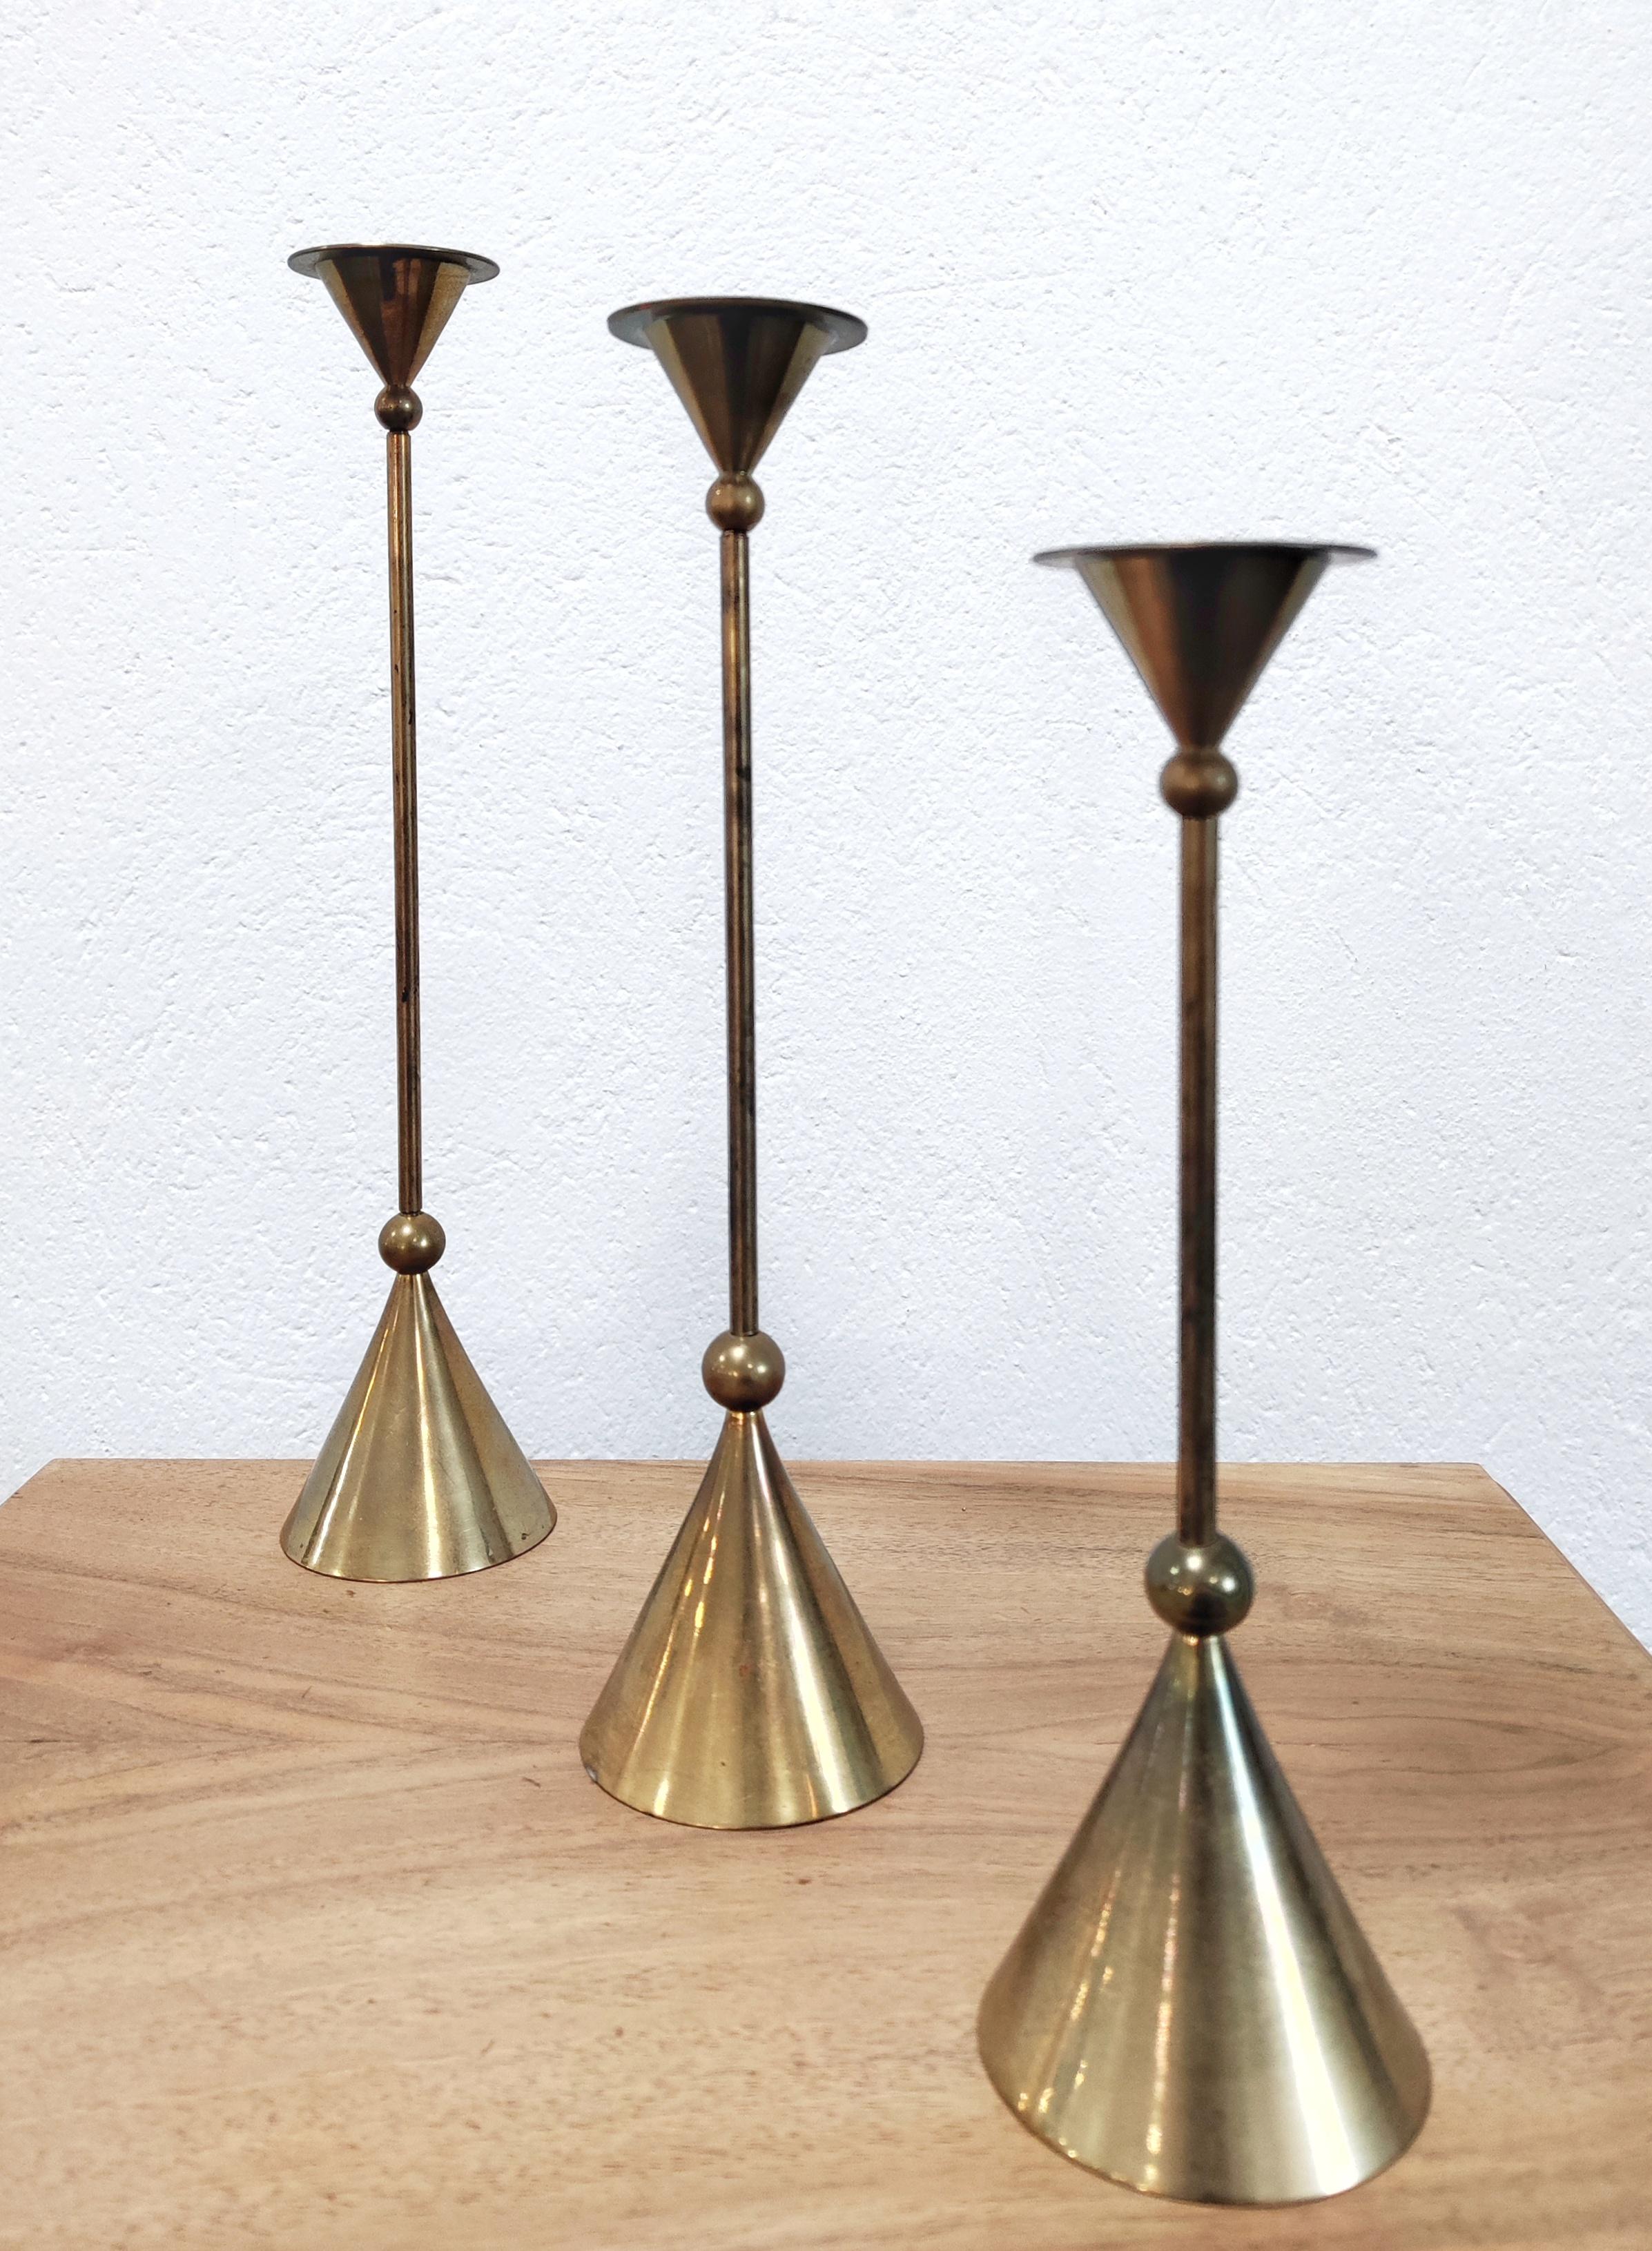 Dans cette liste, vous trouverez un ensemble de trois bougeoirs en bronze. Les chandeliers sont conçus par Christian de Beaumont en France dans les années 1980. Ils sont disponibles en trois tailles différentes, ce qui permet de jouer avec eux et de